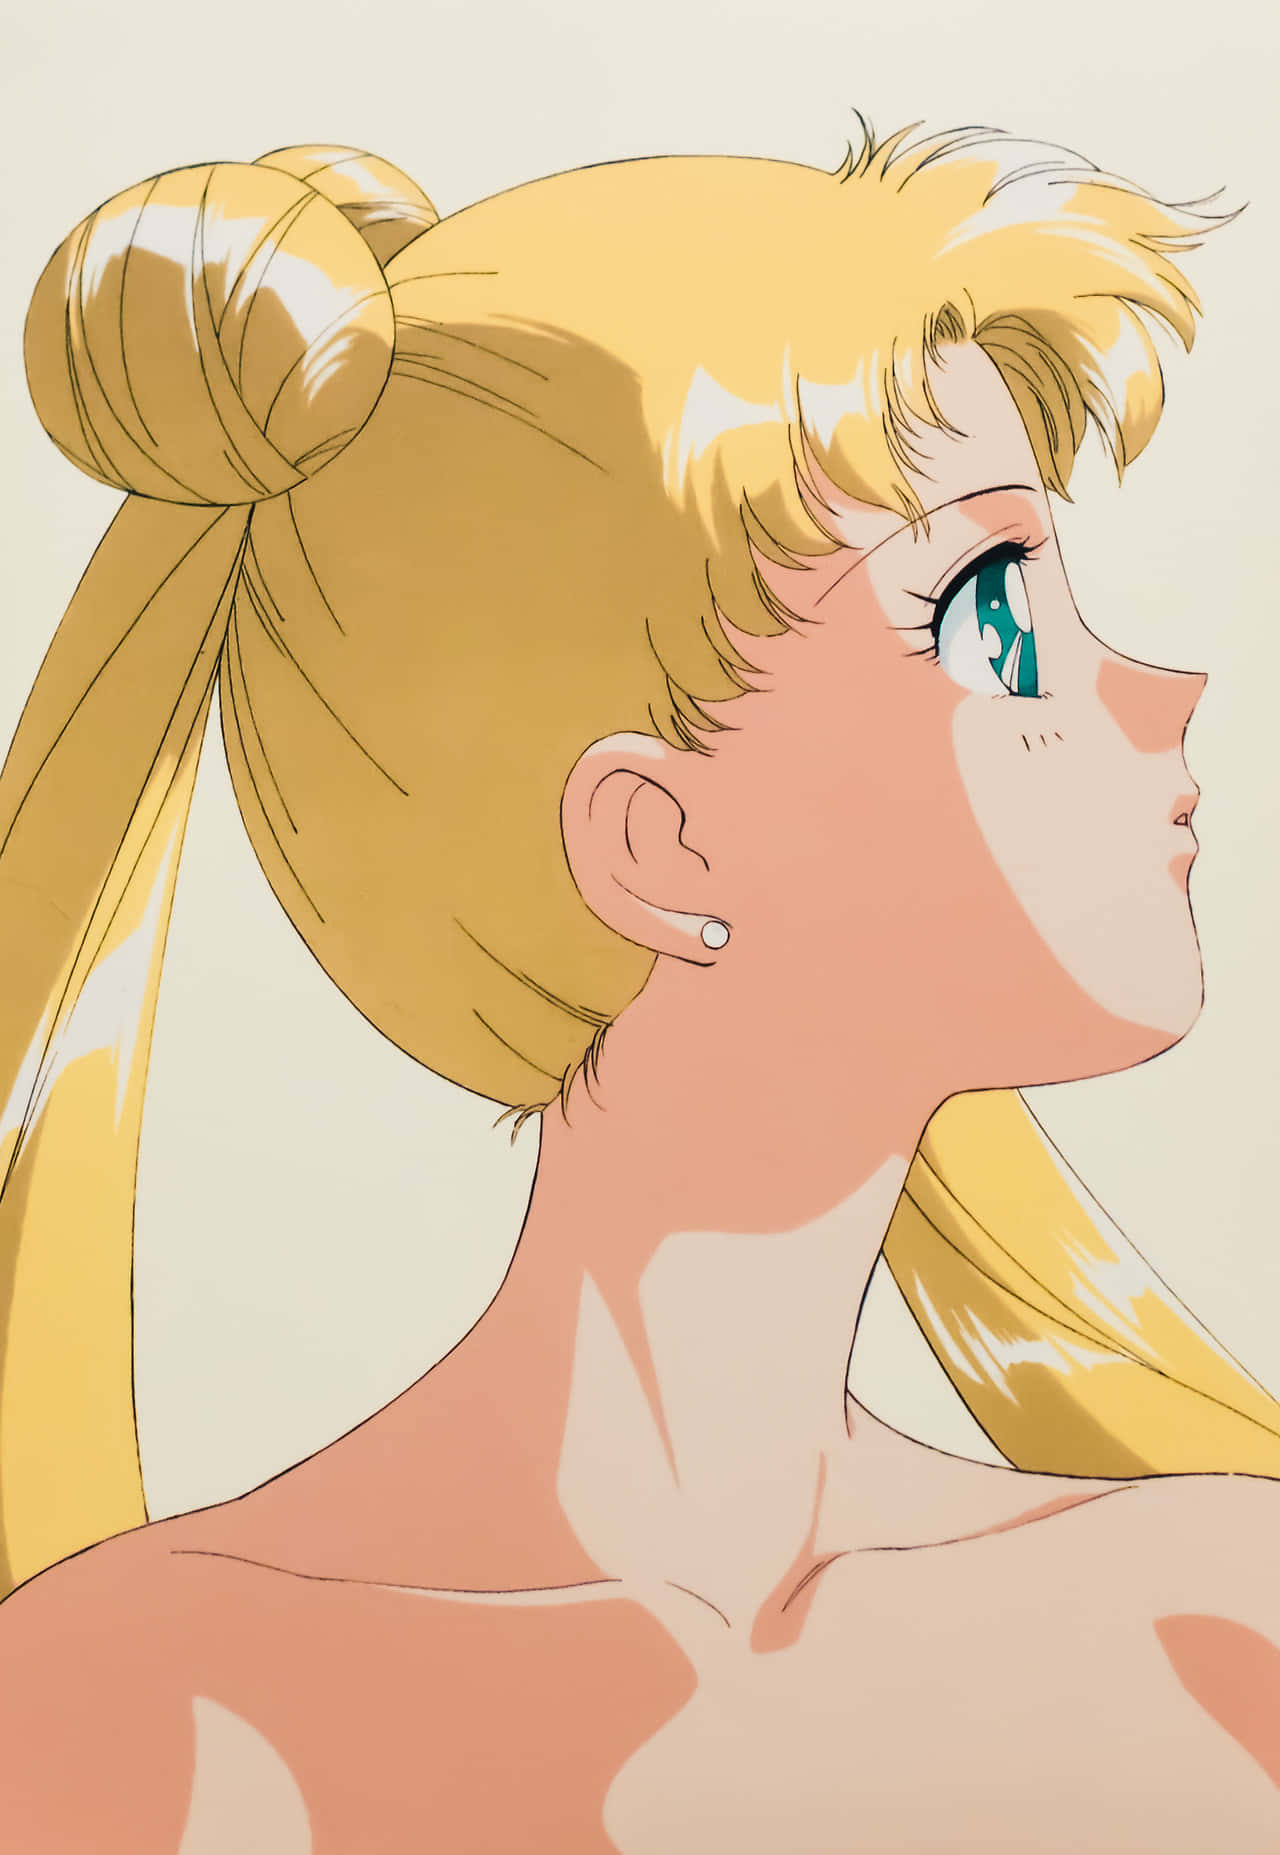 Profilbildpå Sailor Moon. Wallpaper